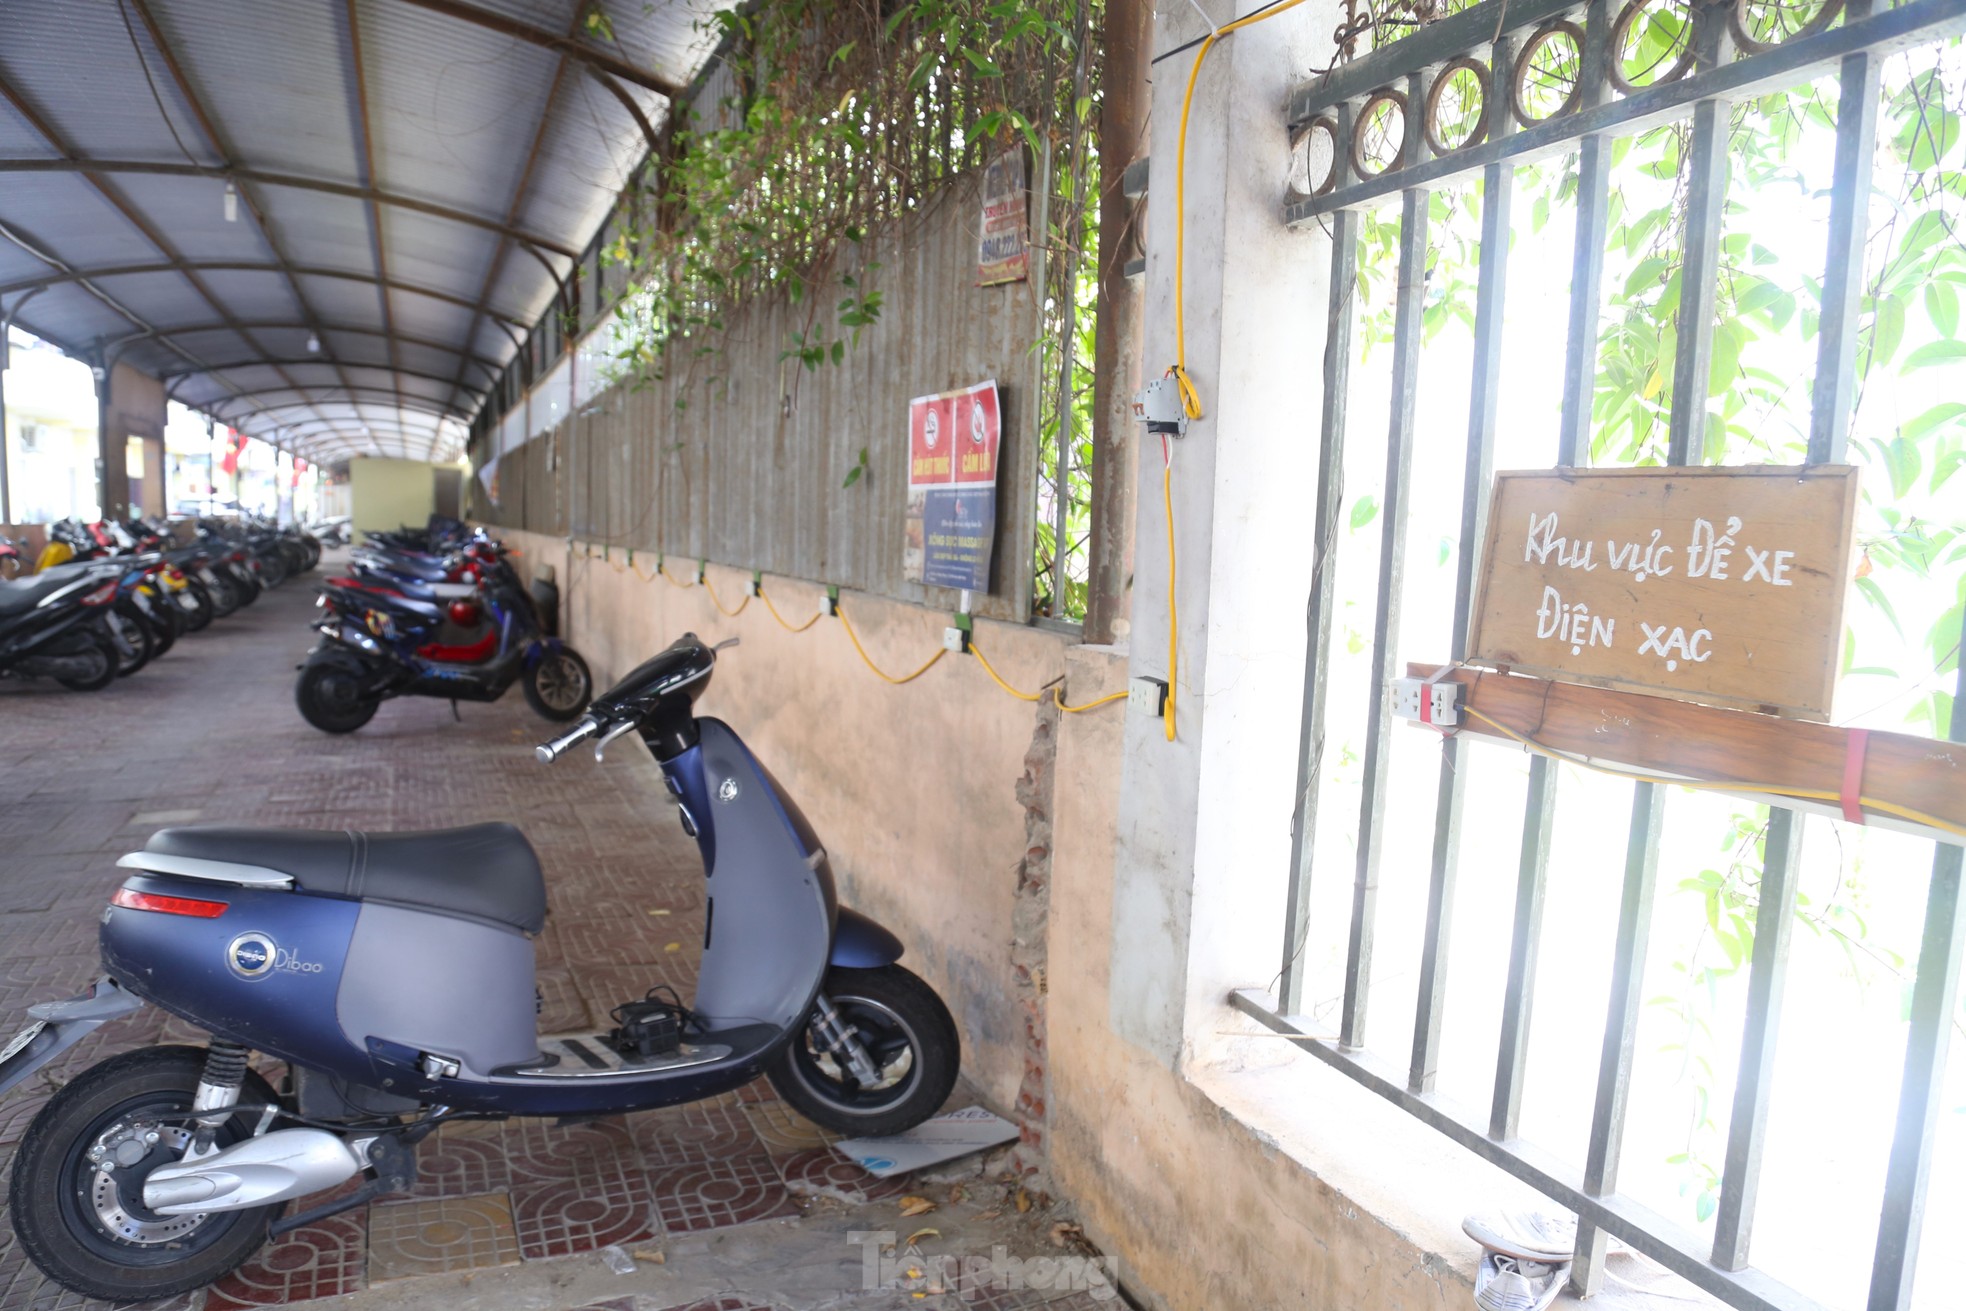 Nhiều chung cư ở Nghệ An bố trí điểm sạc xe điện riêng, có nơi cấm sạc qua đêm - Ảnh 5.